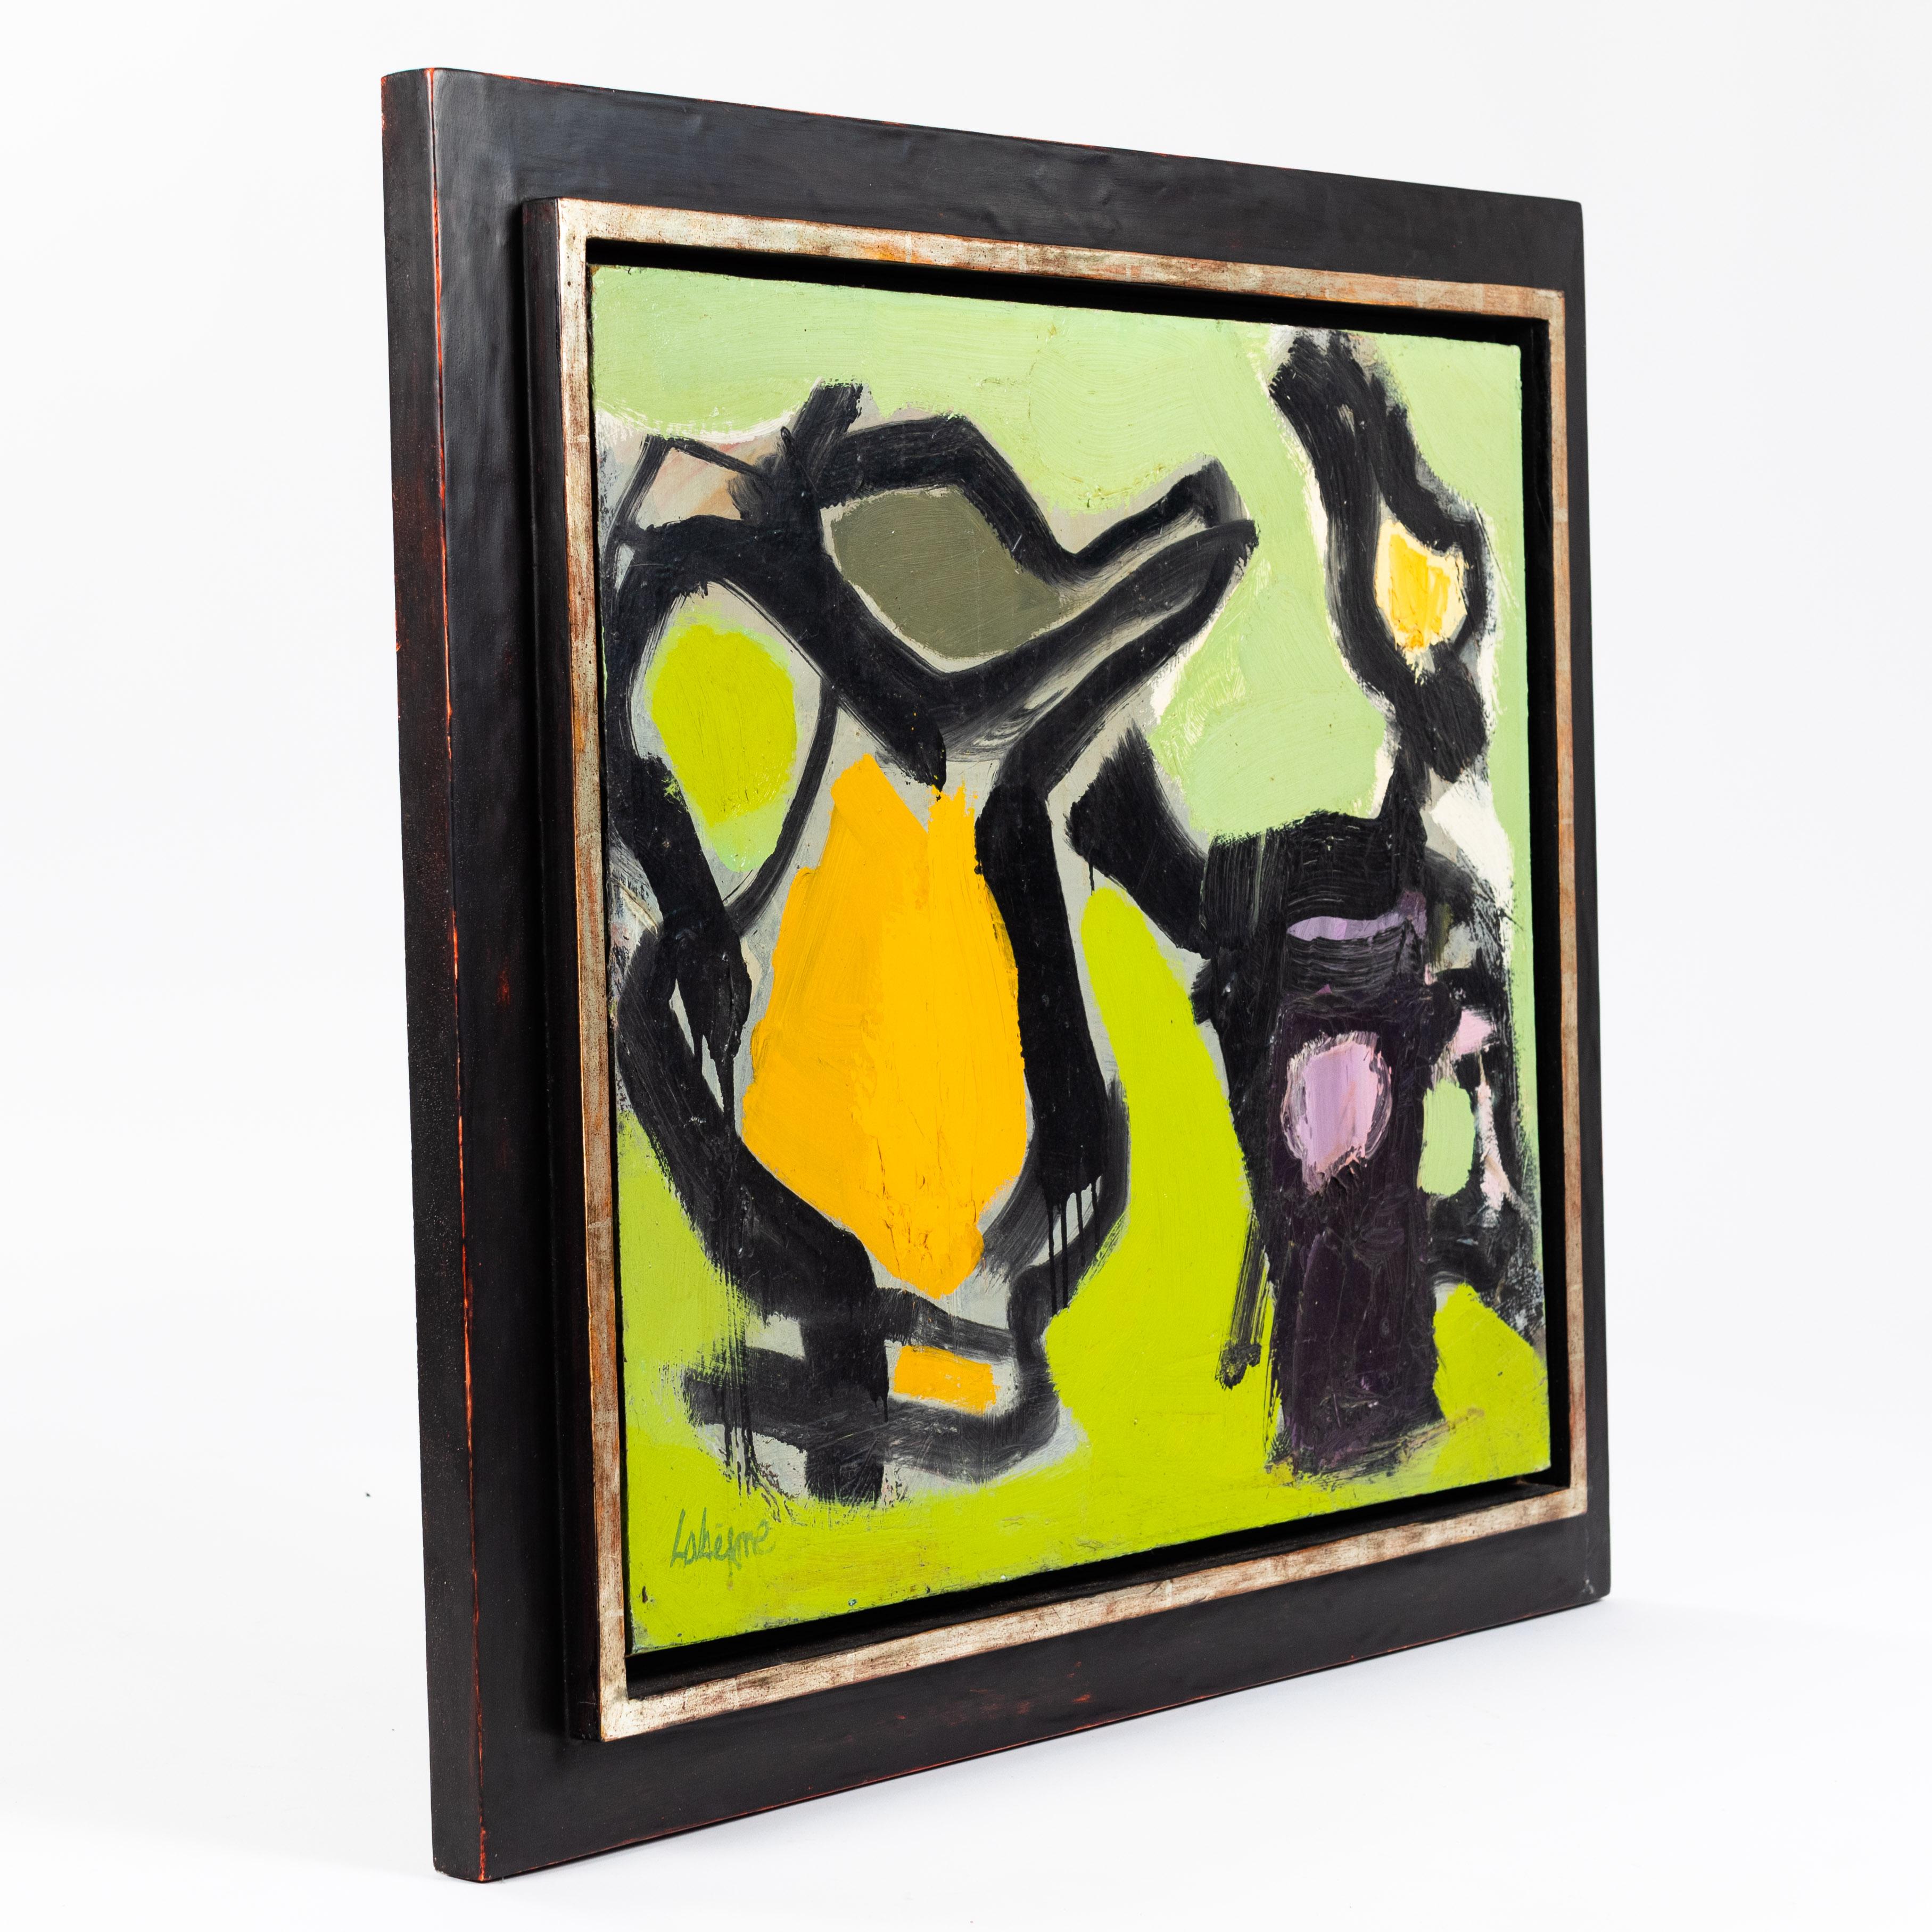 Peinture abstraite aux couleurs vert-noir-orange de Serge Labégorre - encadrée professionnellement
Nature morte passionnante conçue avec d'épais coups de pinceau de peinture acrylique qui apparaît encore plus plastique et vivante grâce au cadrage